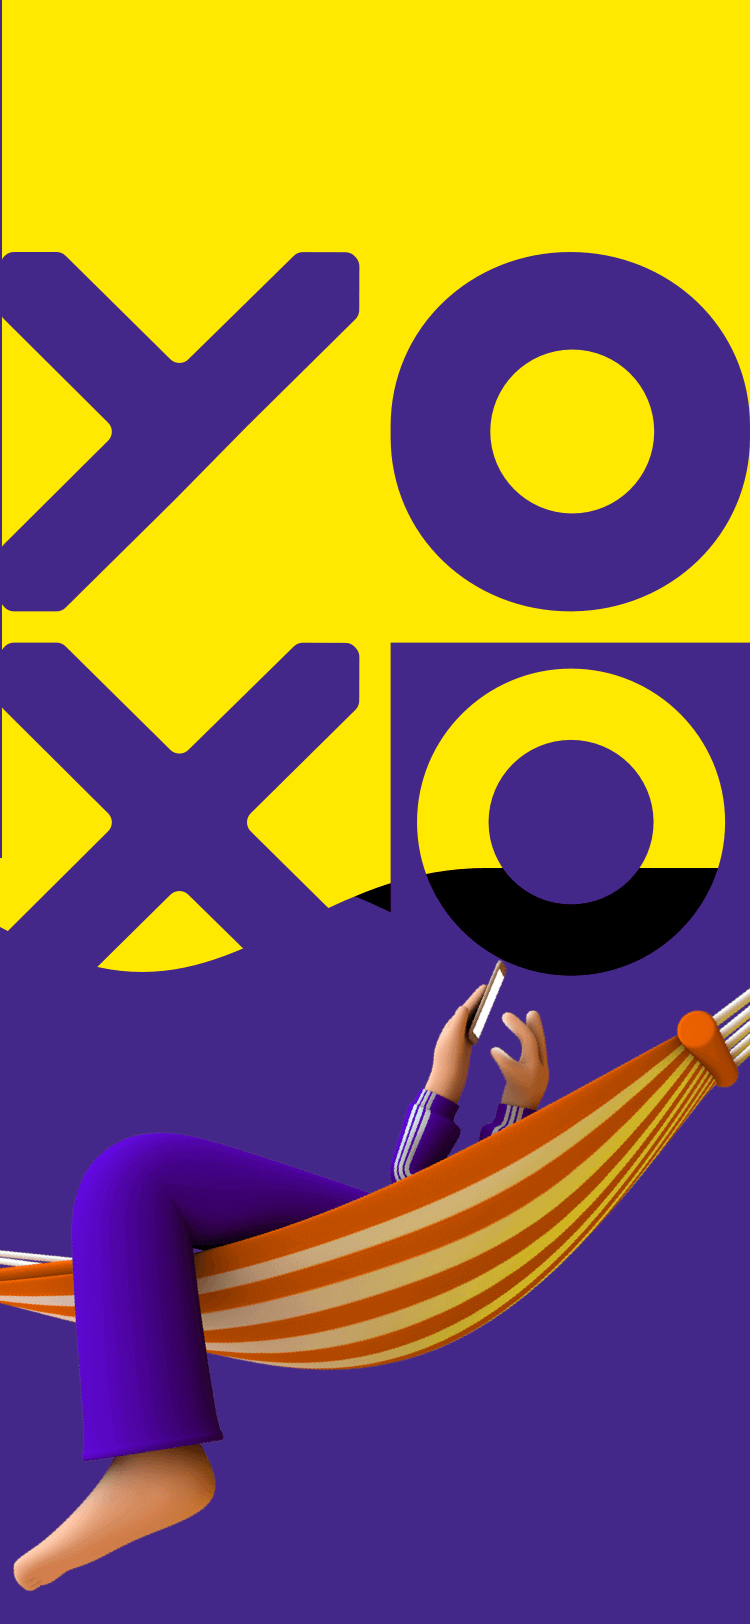 YOXO Dashboard